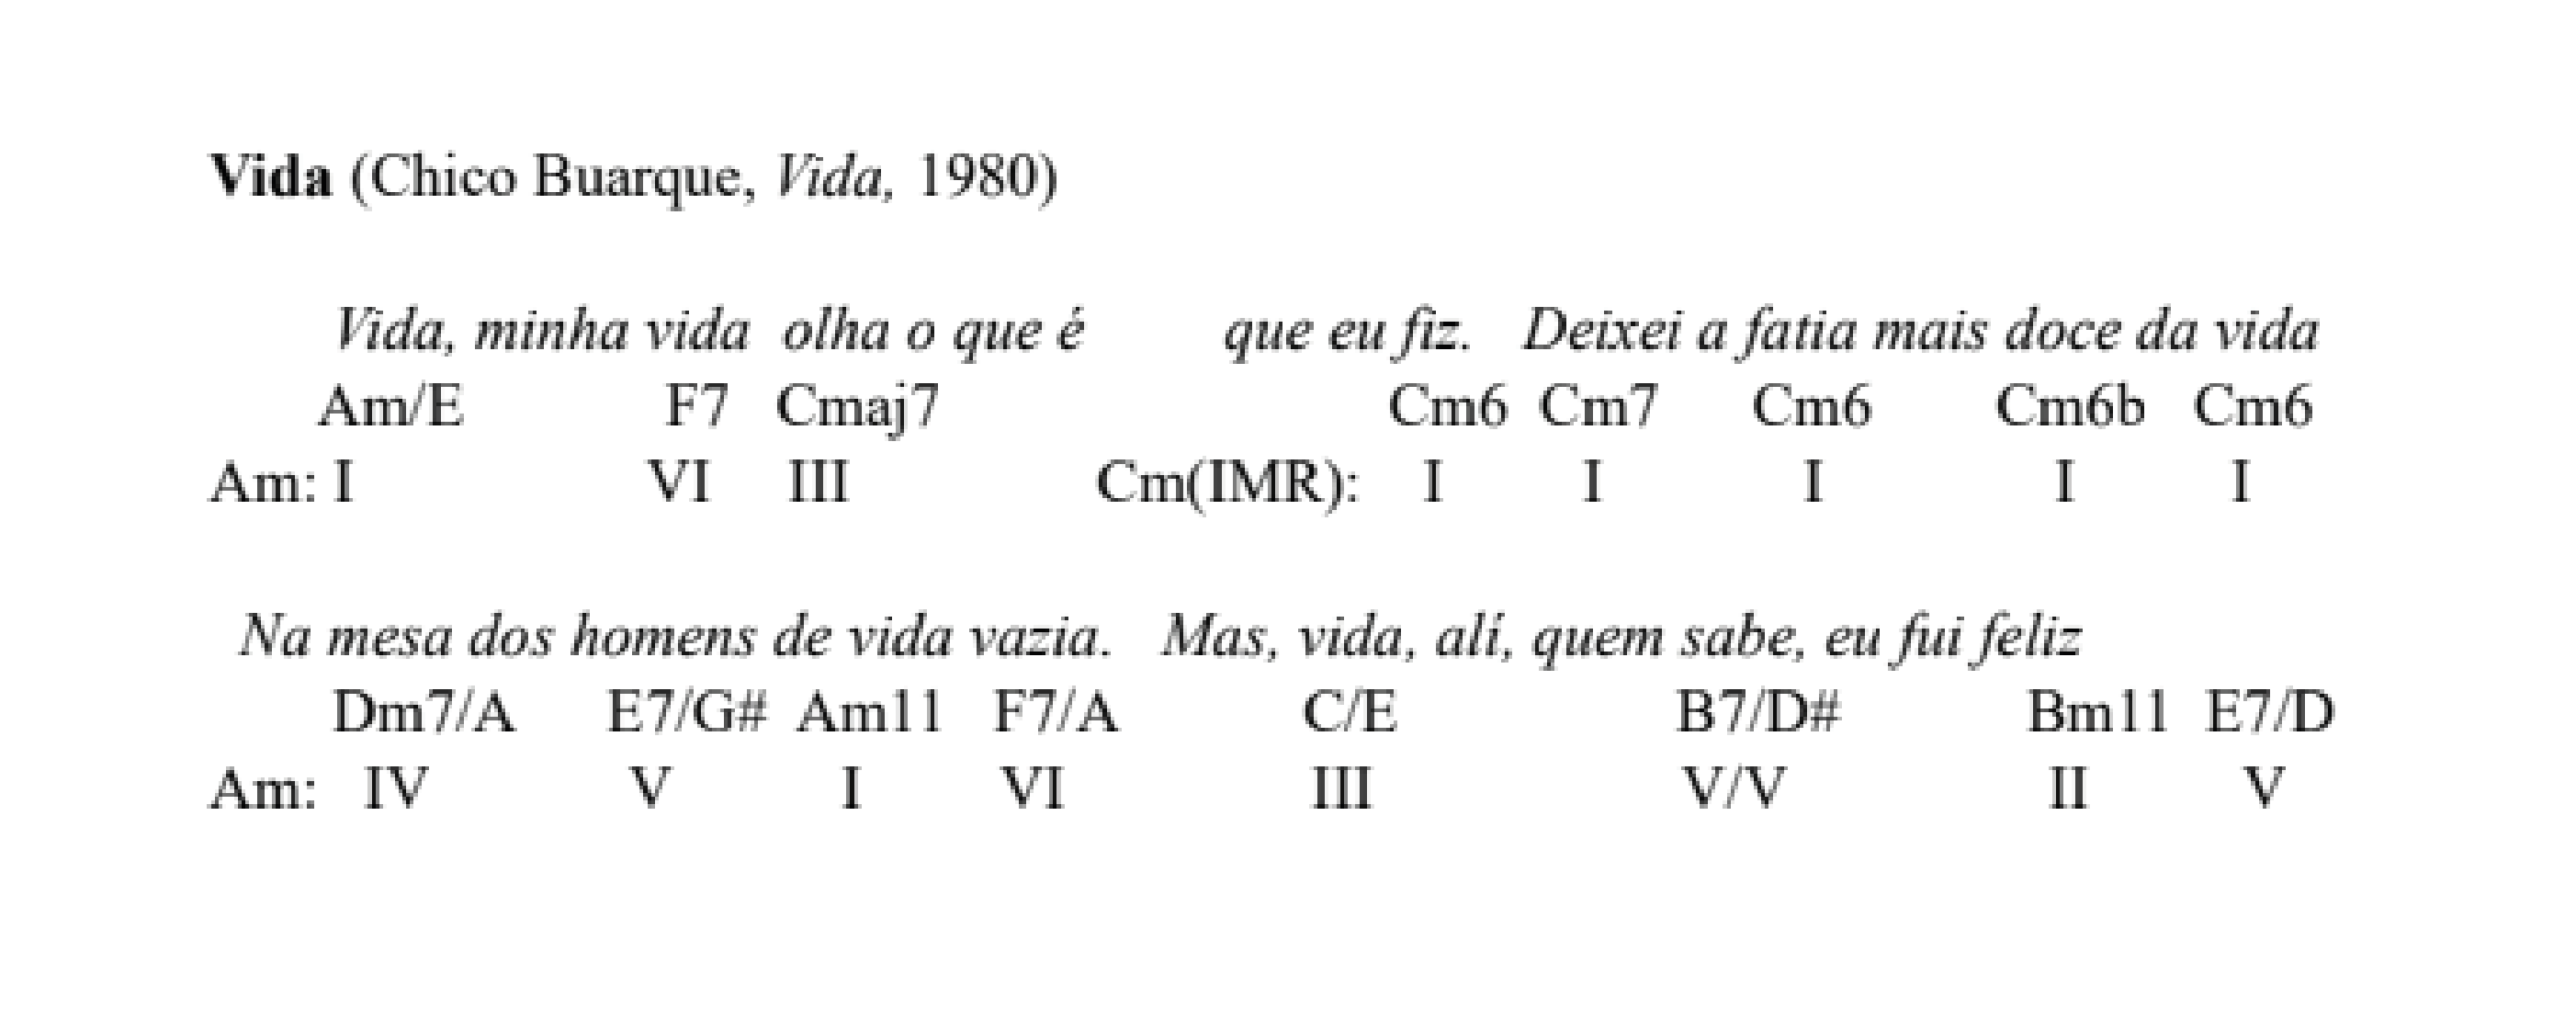 «Vida» (Chico Buarque, Vida, 1980)